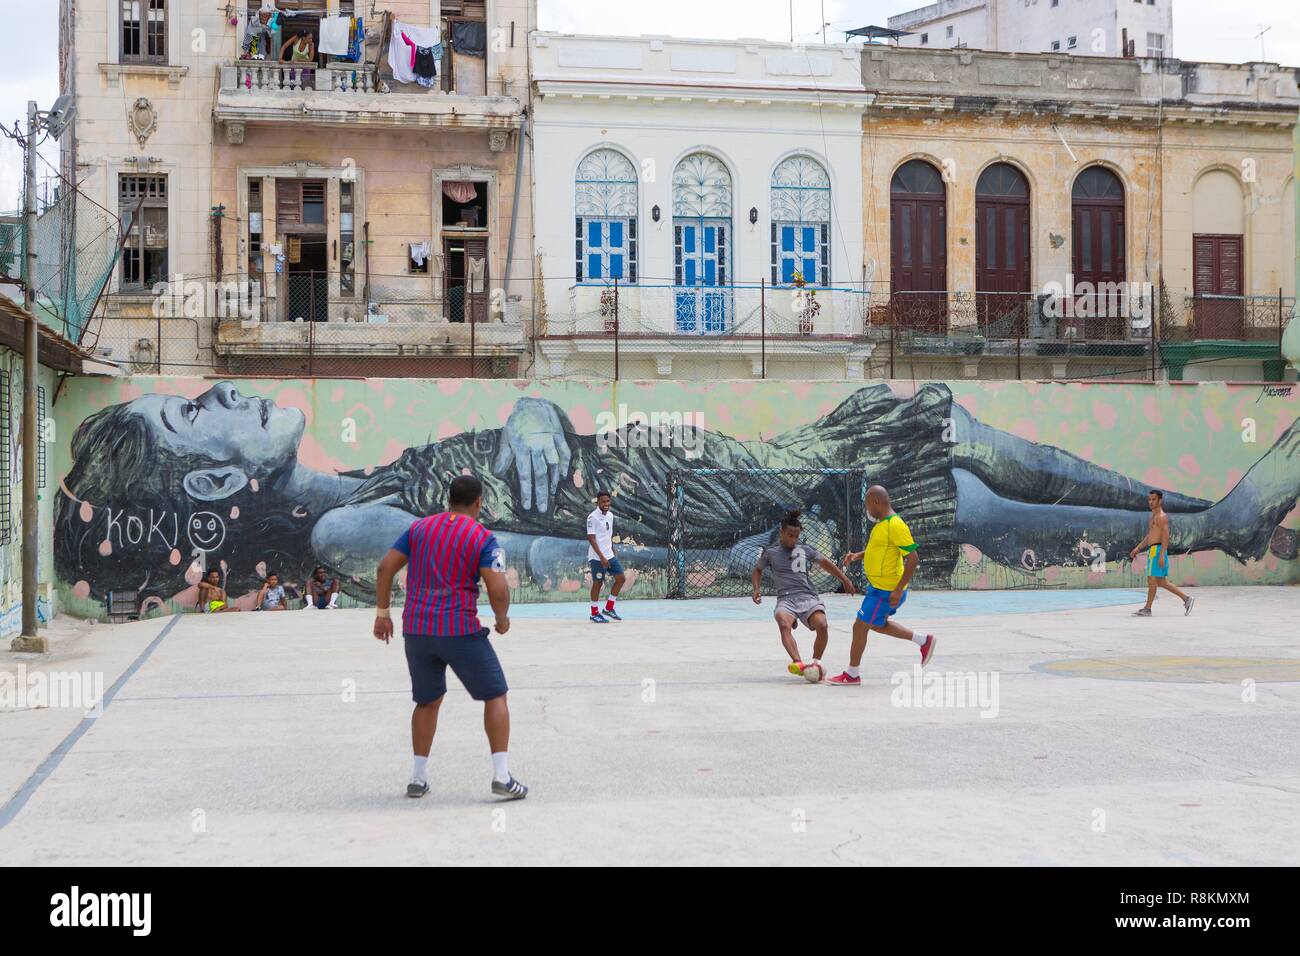 Cuba's Football Revolution